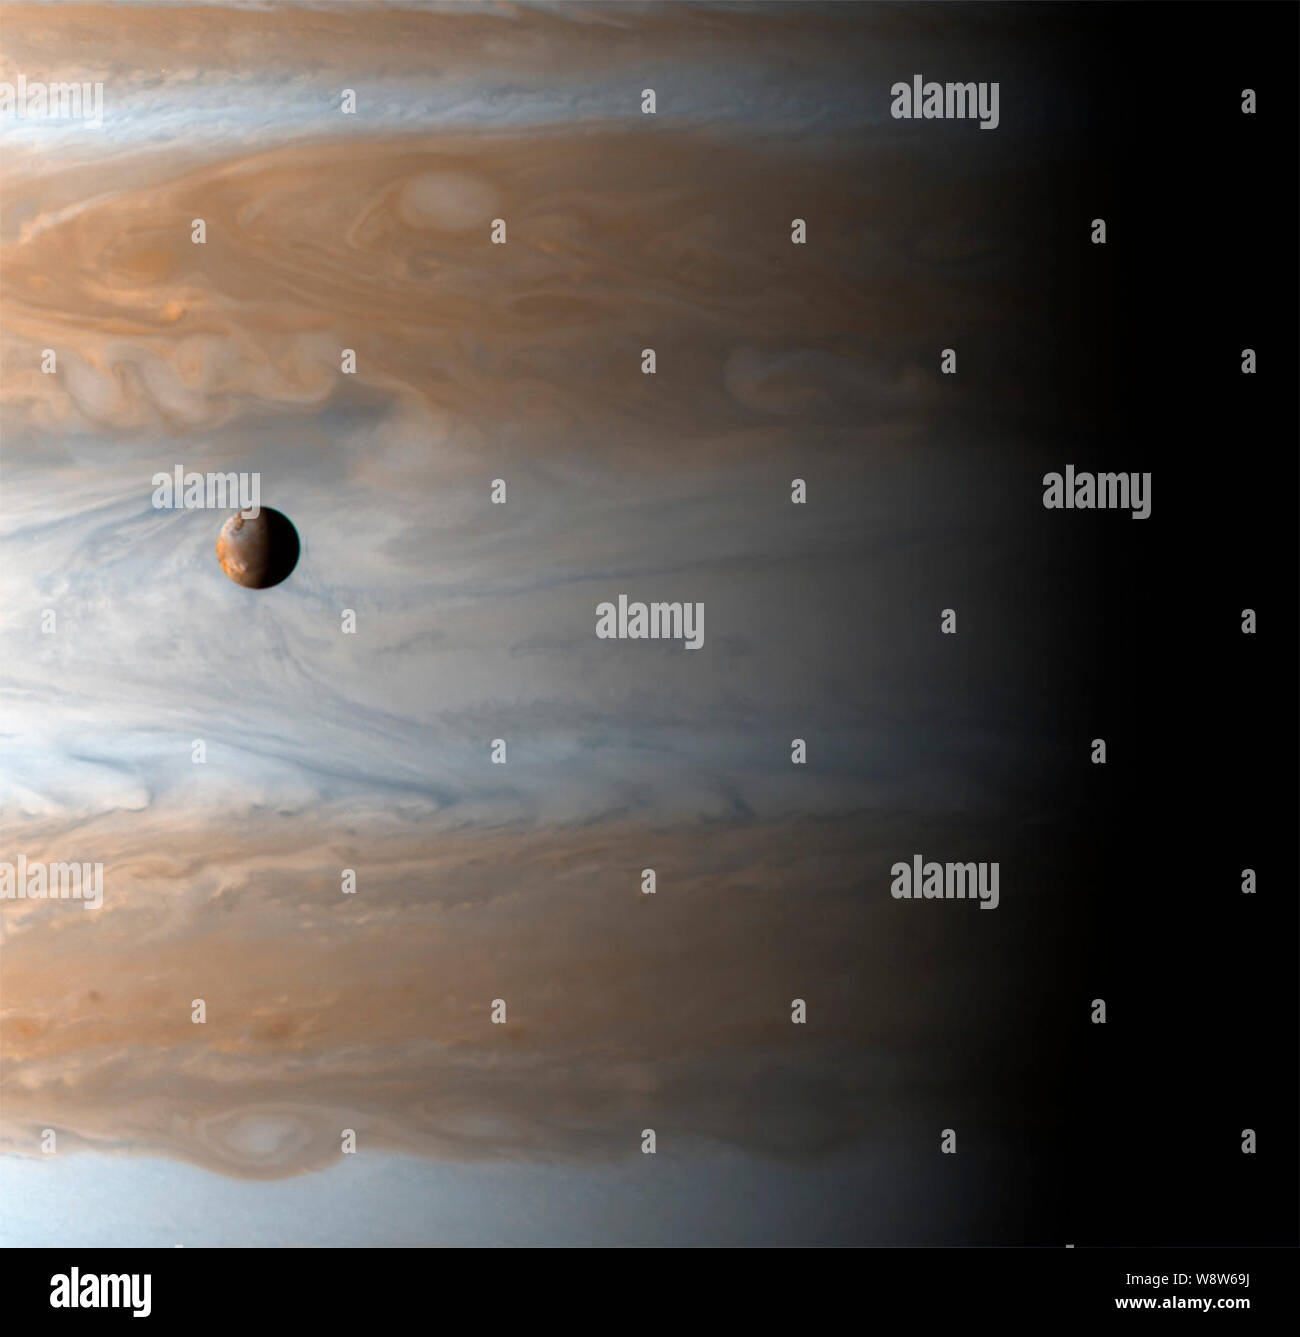 Ein neues Jahr für Jupiter und IO-die Galileischen Satelliten-Io schwebt über der cloudtops von Jupiter in diesem Bild aufgenommen am Beginn des neuen Jahrtausends, Januar 1, 2001 10:00 UTC (Raumsonde), zwei Tage nach der größten Annäherung von Cassini. Das Bild täuscht: Es gibt 350.000 Kilometer - rund 2,5 Jupiters - zwischen Io und Jupiter der Wolken. Io ist die Größe unserer Mond und Jupiter ist sehr groß. Stockfoto